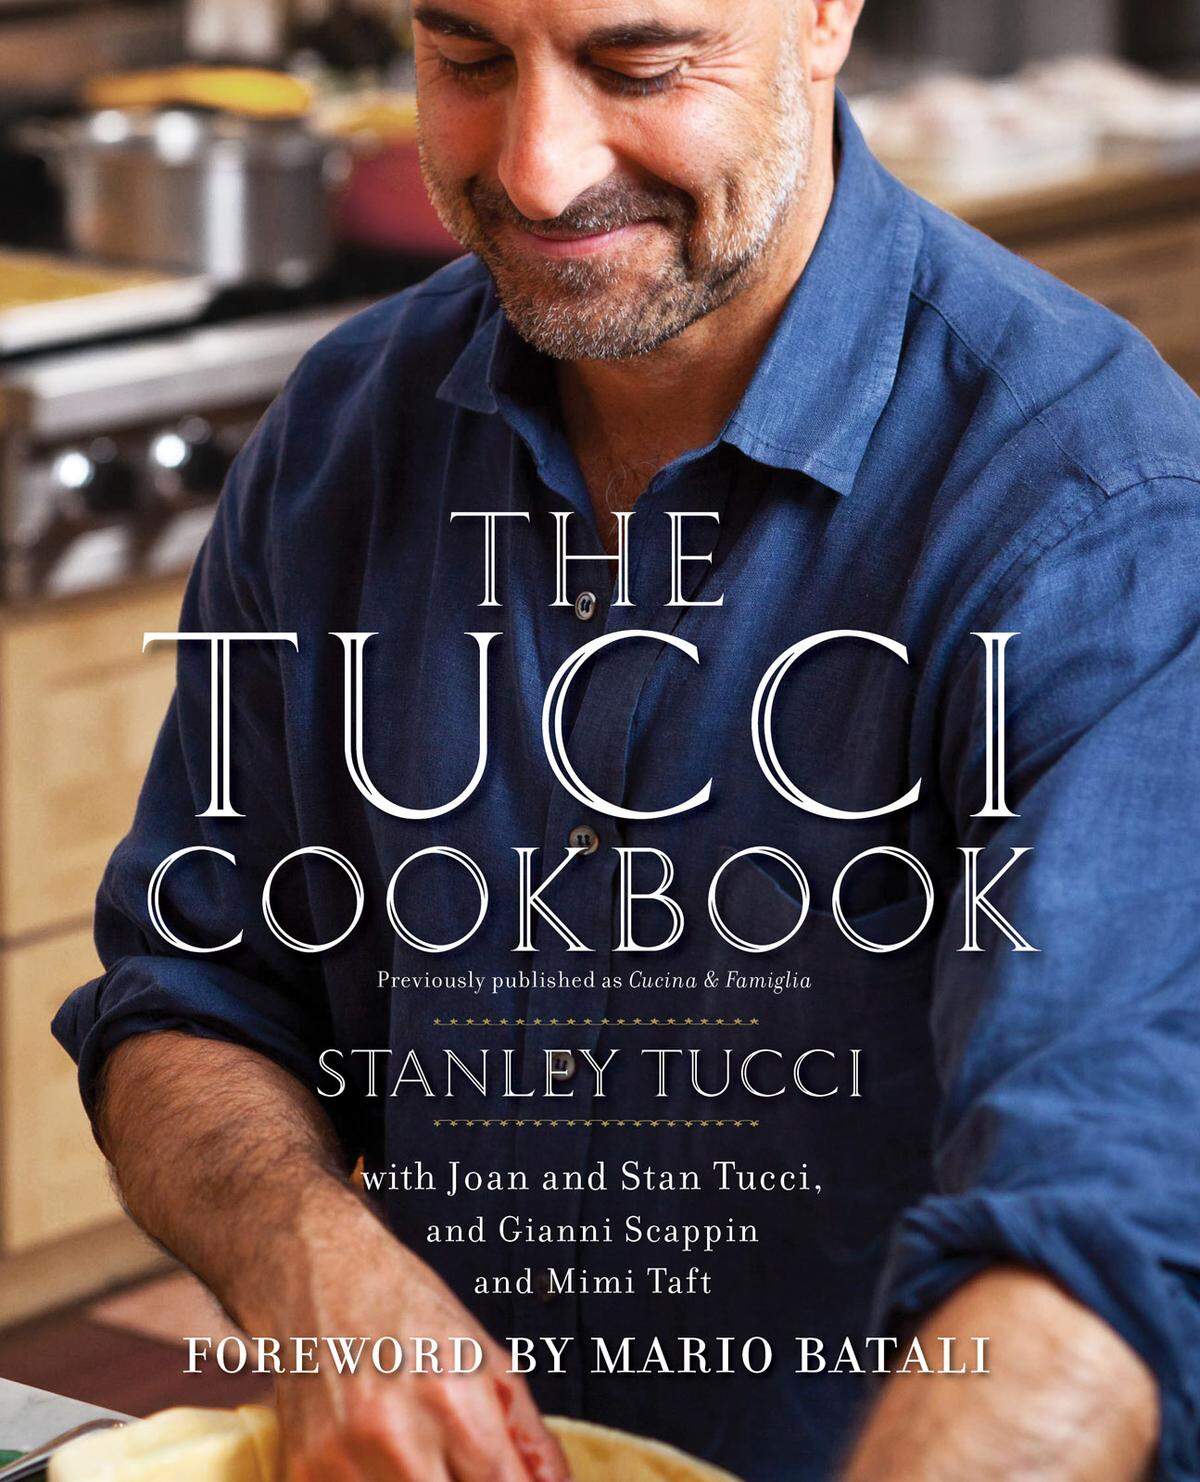 An der Seite von Meryl Streep überließ Stanley Tucci in „Julie &amp; Julia“ noch seiner Filmfrau die Kochbuchautoren-Karriere. Abseits vom Filmset brachte der passionierte Koch seine Favoriten aus der italienischen Küche in seinem Werk „Tucci Cookbook“ zu Papier.